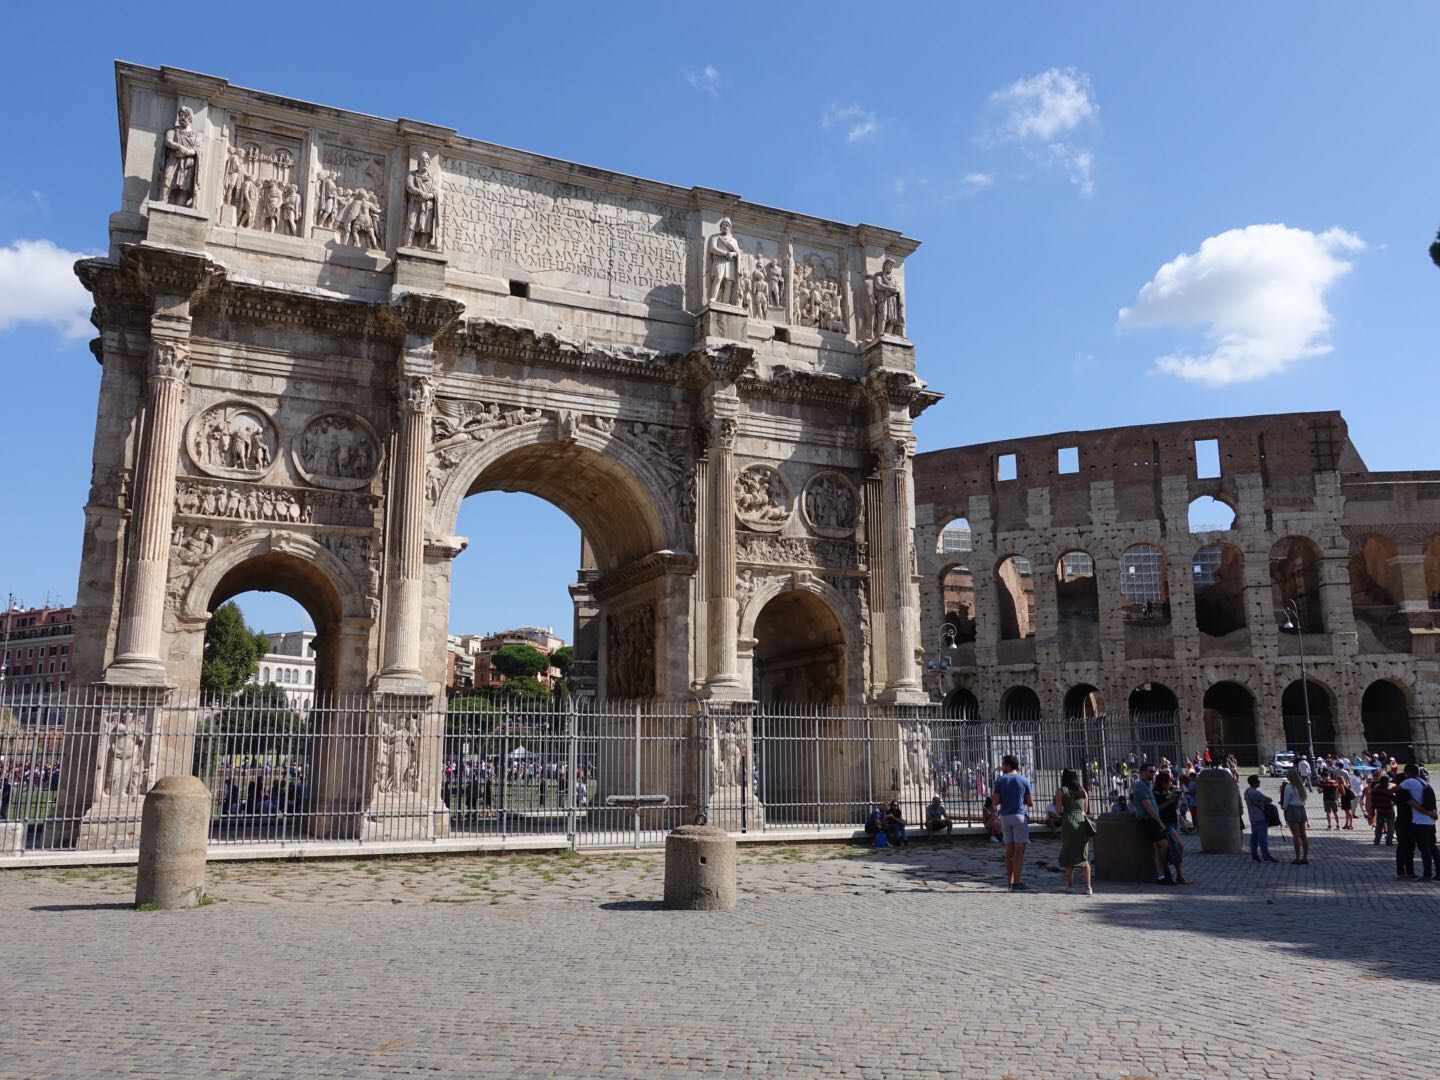 君士坦丁一统罗马帝国。凯旋门位于斗兽场和古罗马废墟之间，是为纪念君士坦